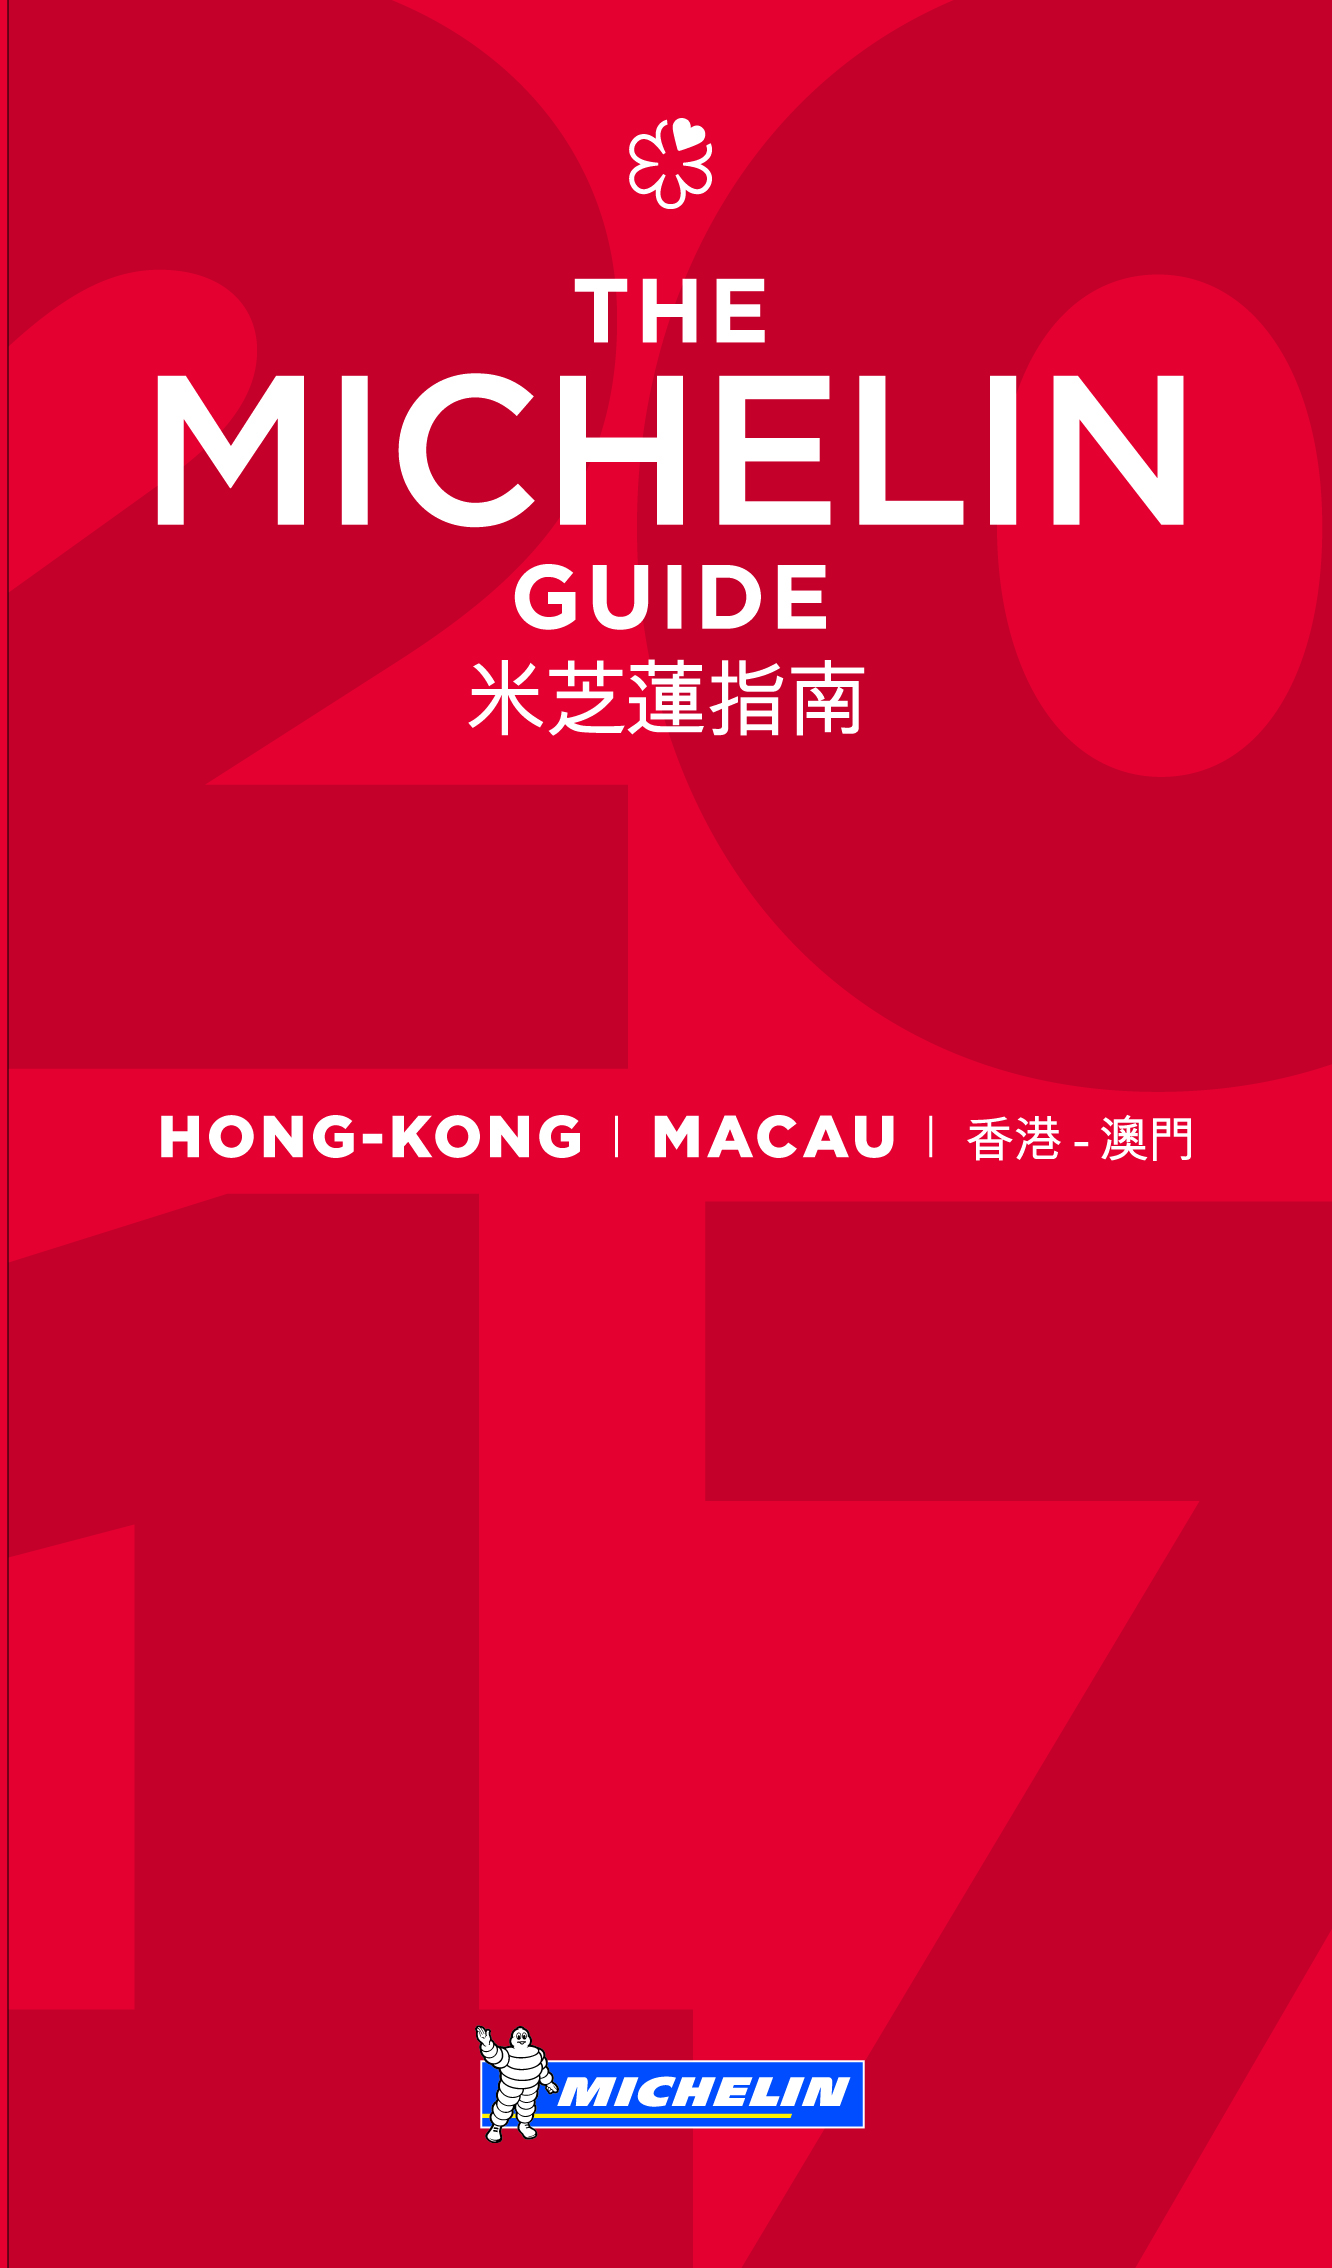 La guía MICHELIN Hong Kong Macau 2017